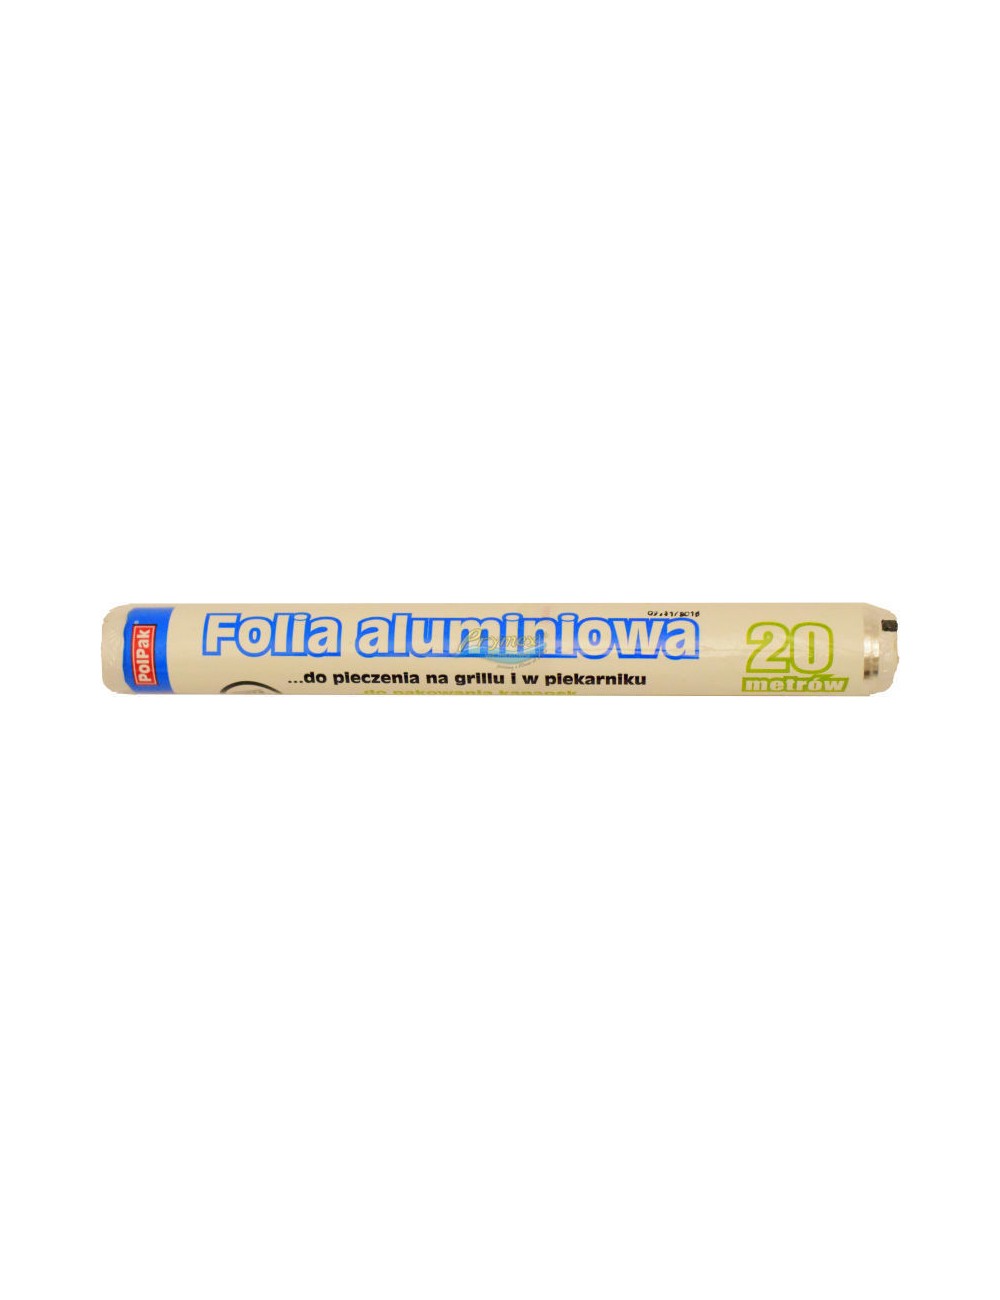 Polpak Folia Aluminiowa (20 metrów) – do pieczenia i pakowania